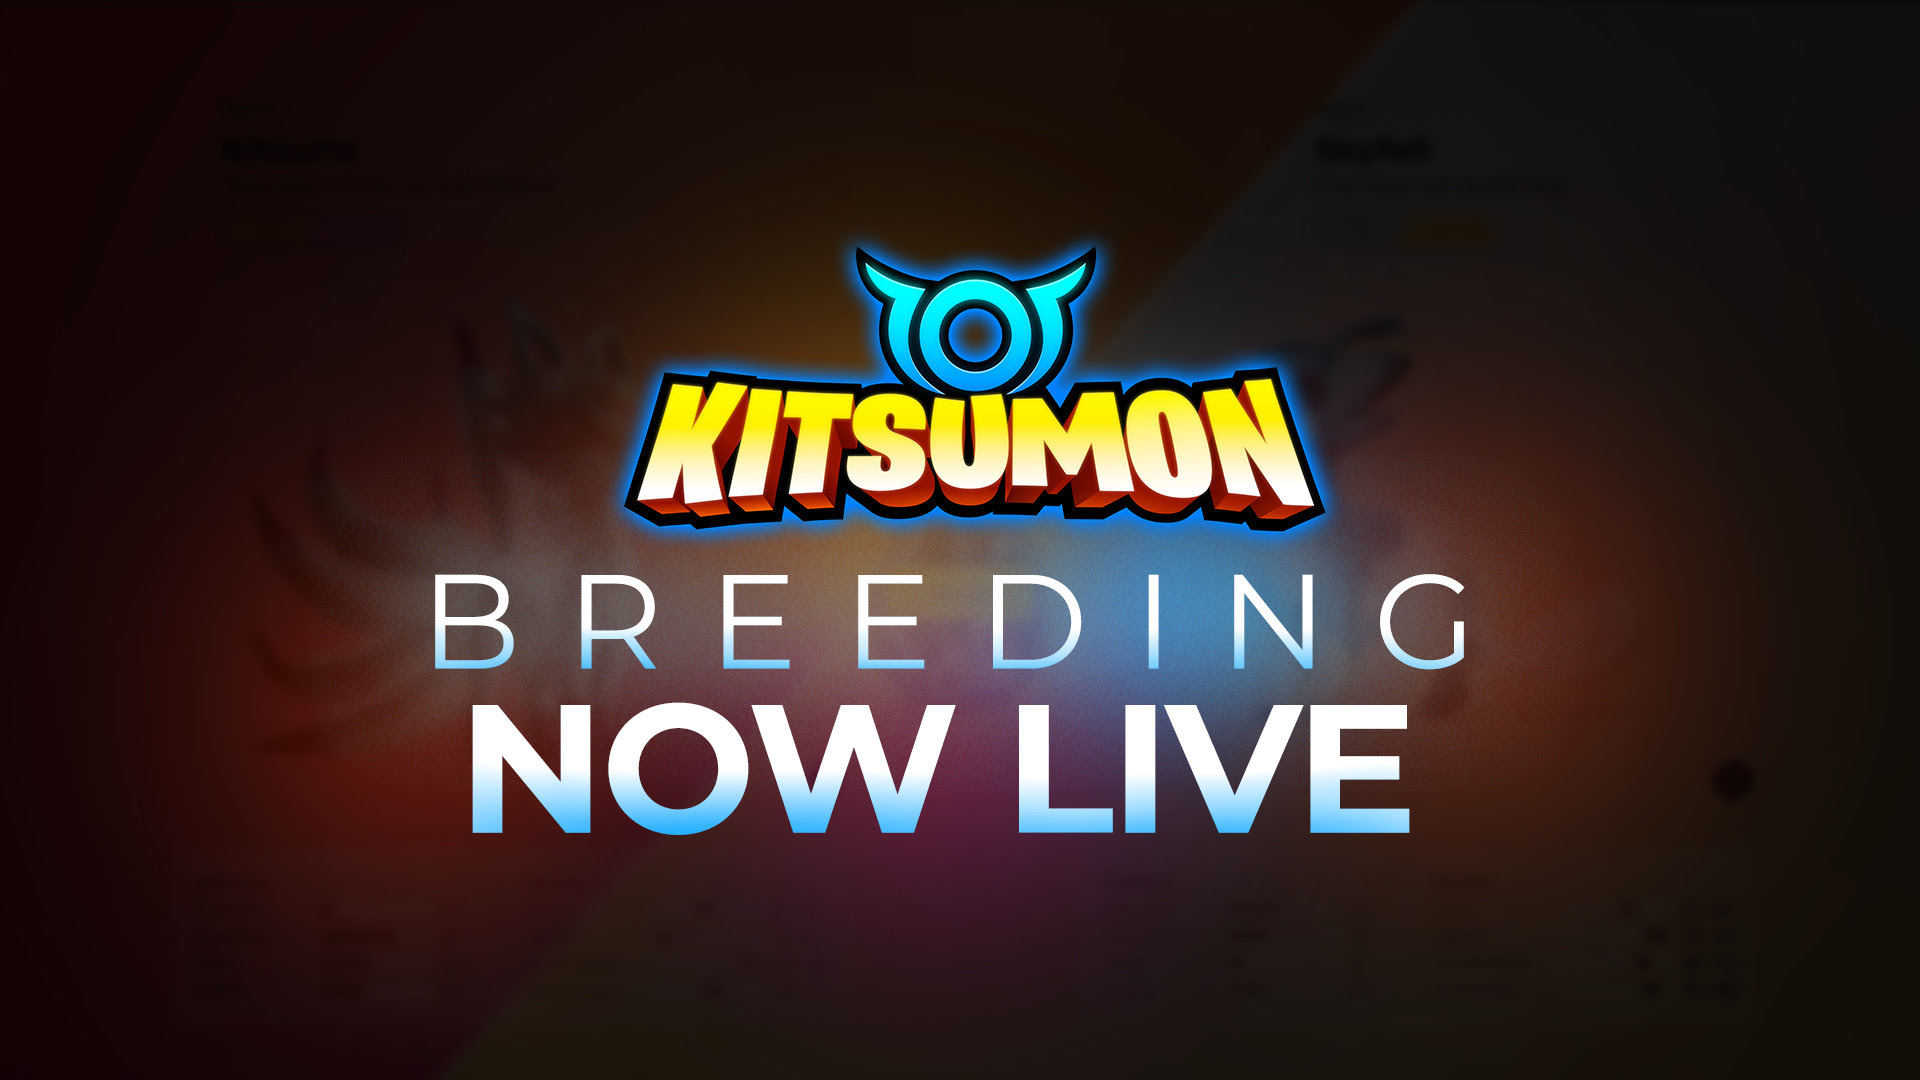  kitsumon nfts nft breeding unique create 2022 